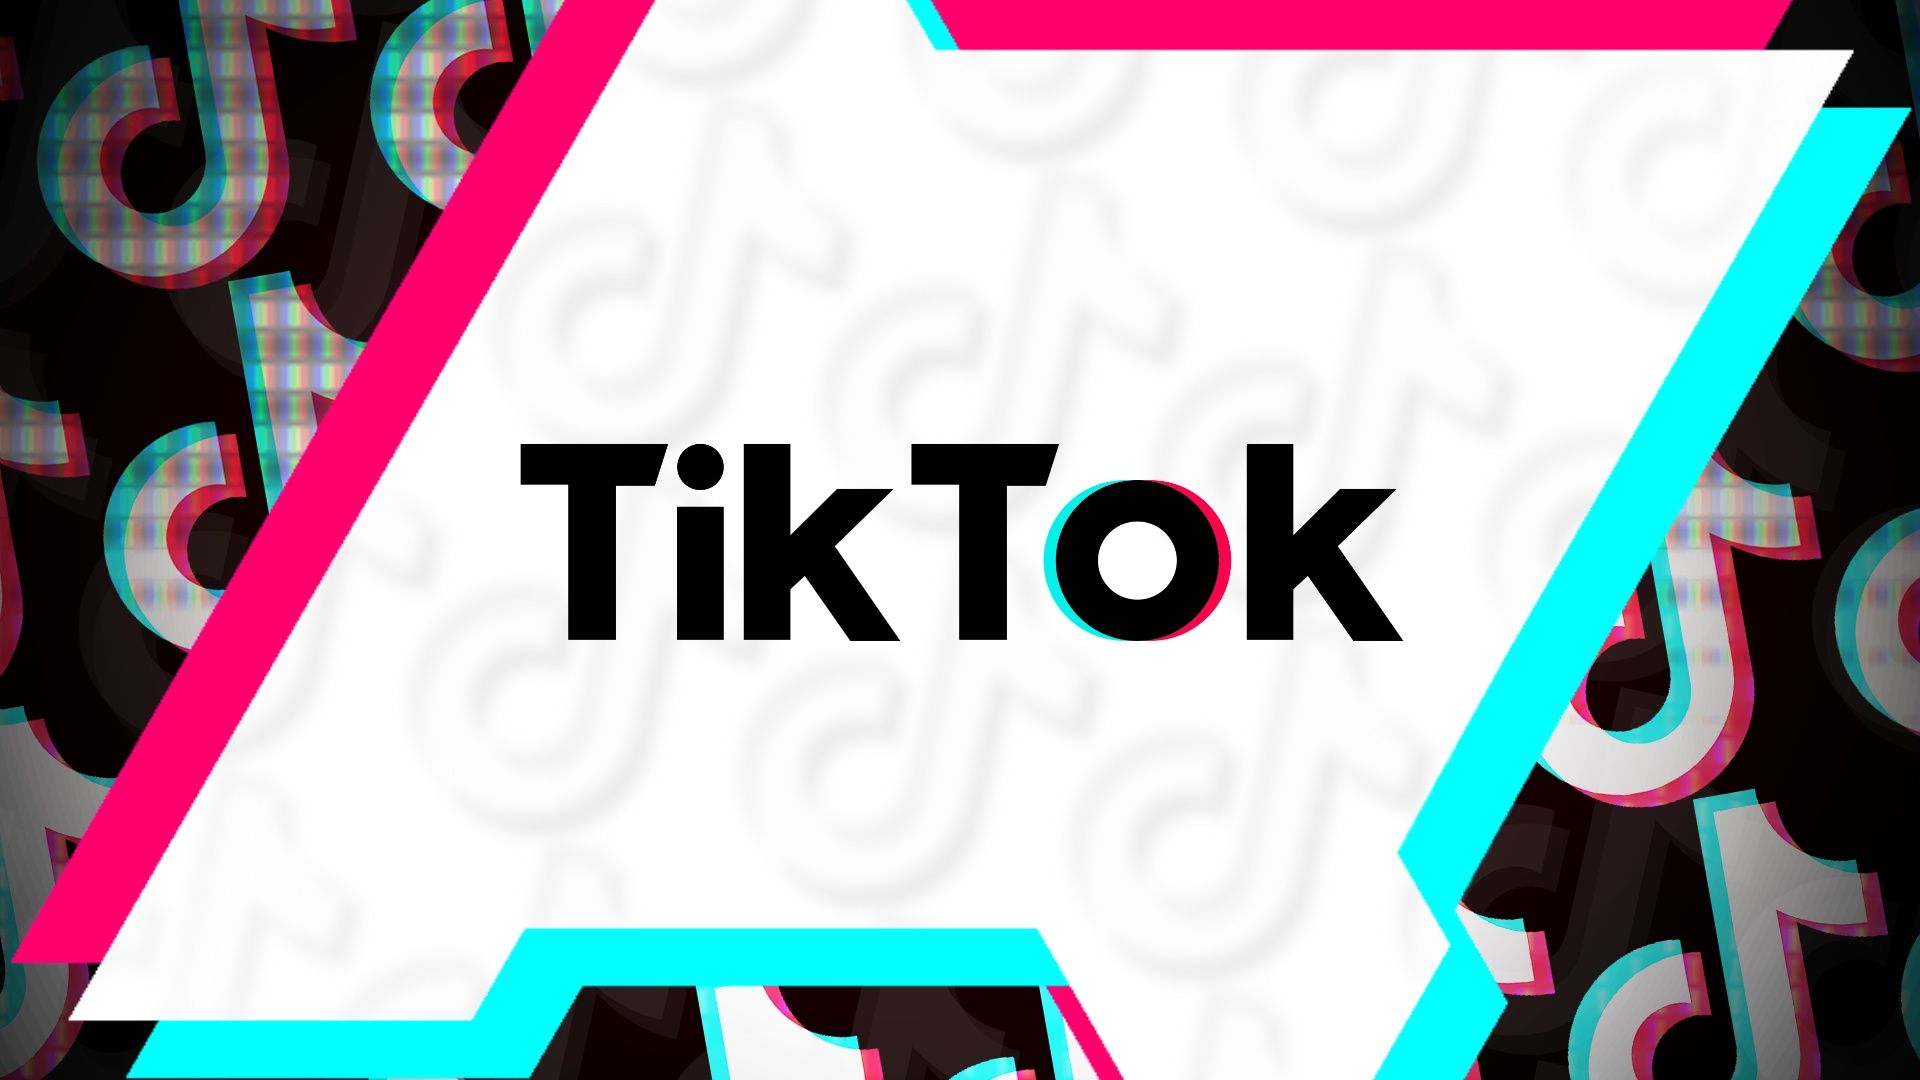 O logotipo do TikTock contra um recorte do logotipo do AndroidPolice com notas musicais ao fundo